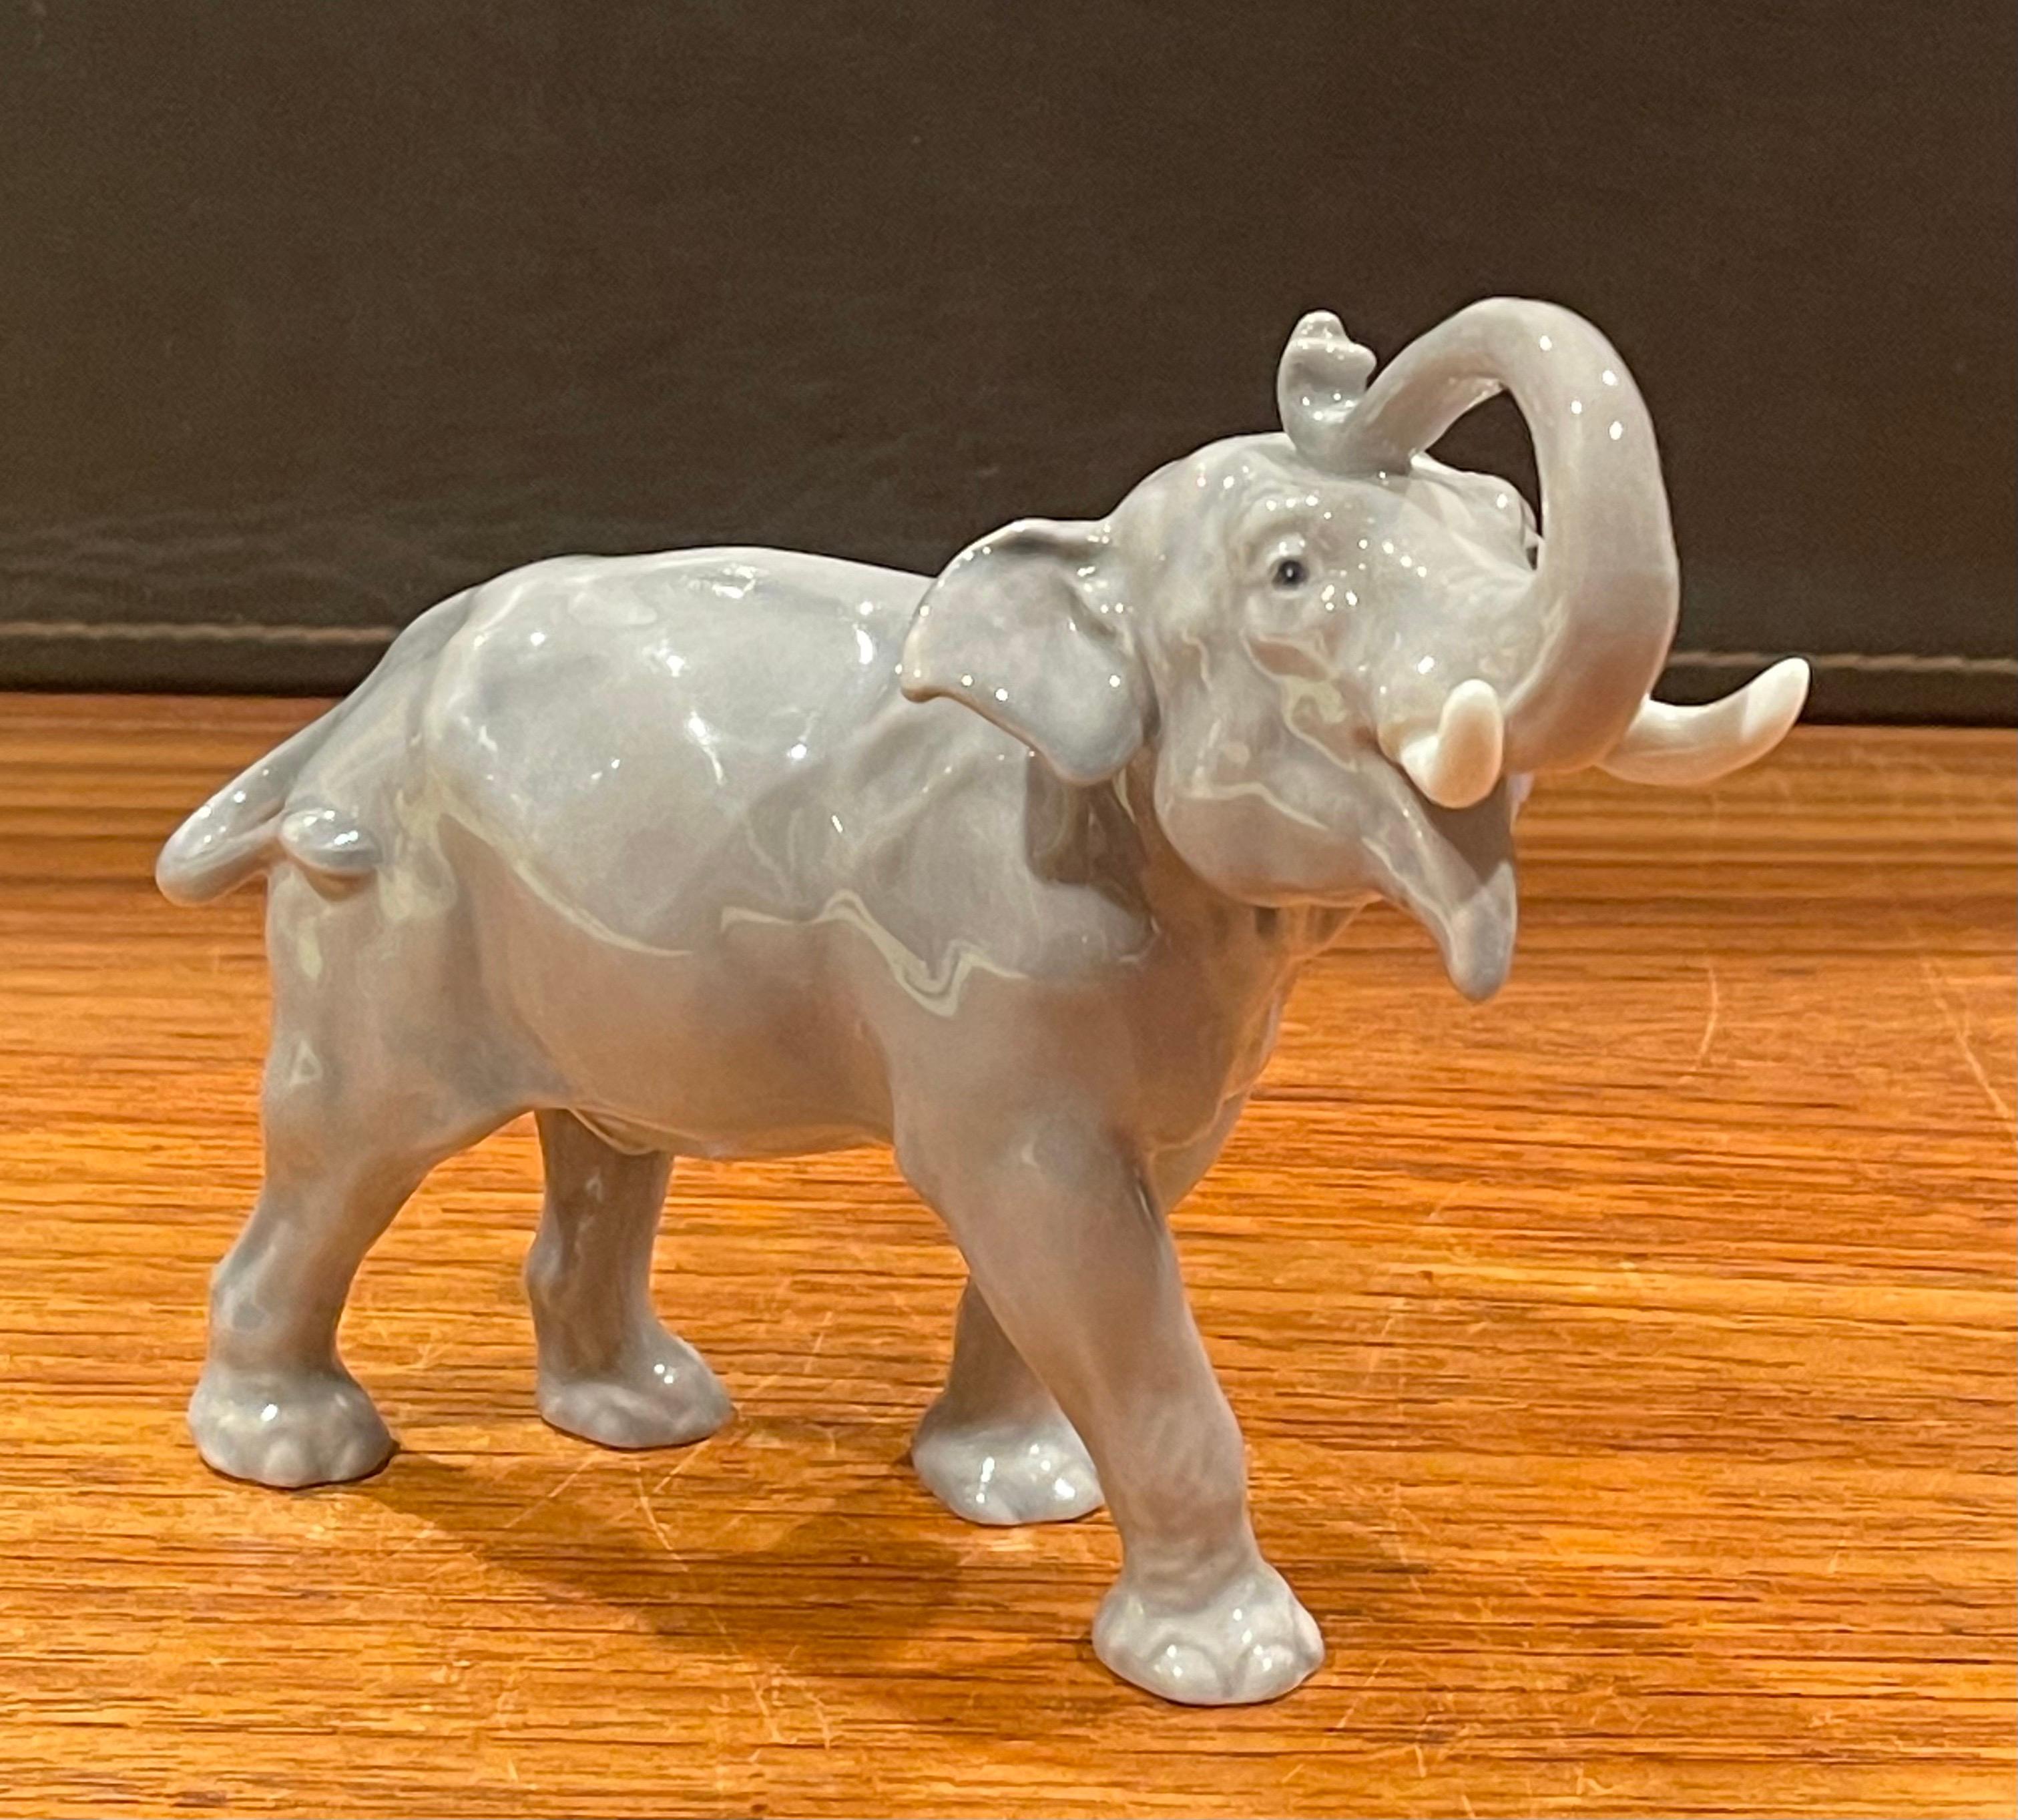 Une très belle sculpture d'éléphant en porcelaine peinte à la main par Bing & Grondahl du Danemark, vers les années 1970. La pièce est en très bon état vintage, sans éclats ni fissures, et mesure 6 